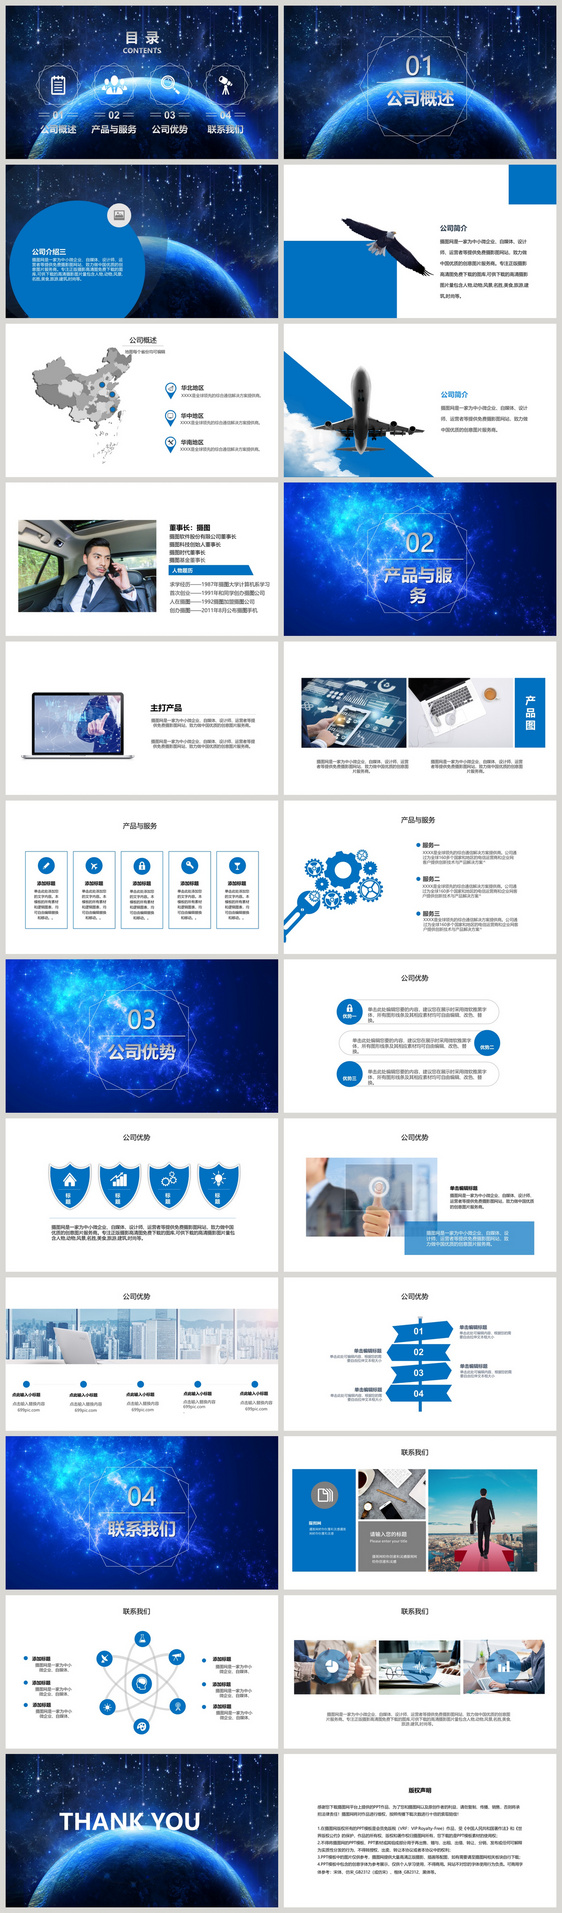 蓝色大气科技感商务企业PPT模板